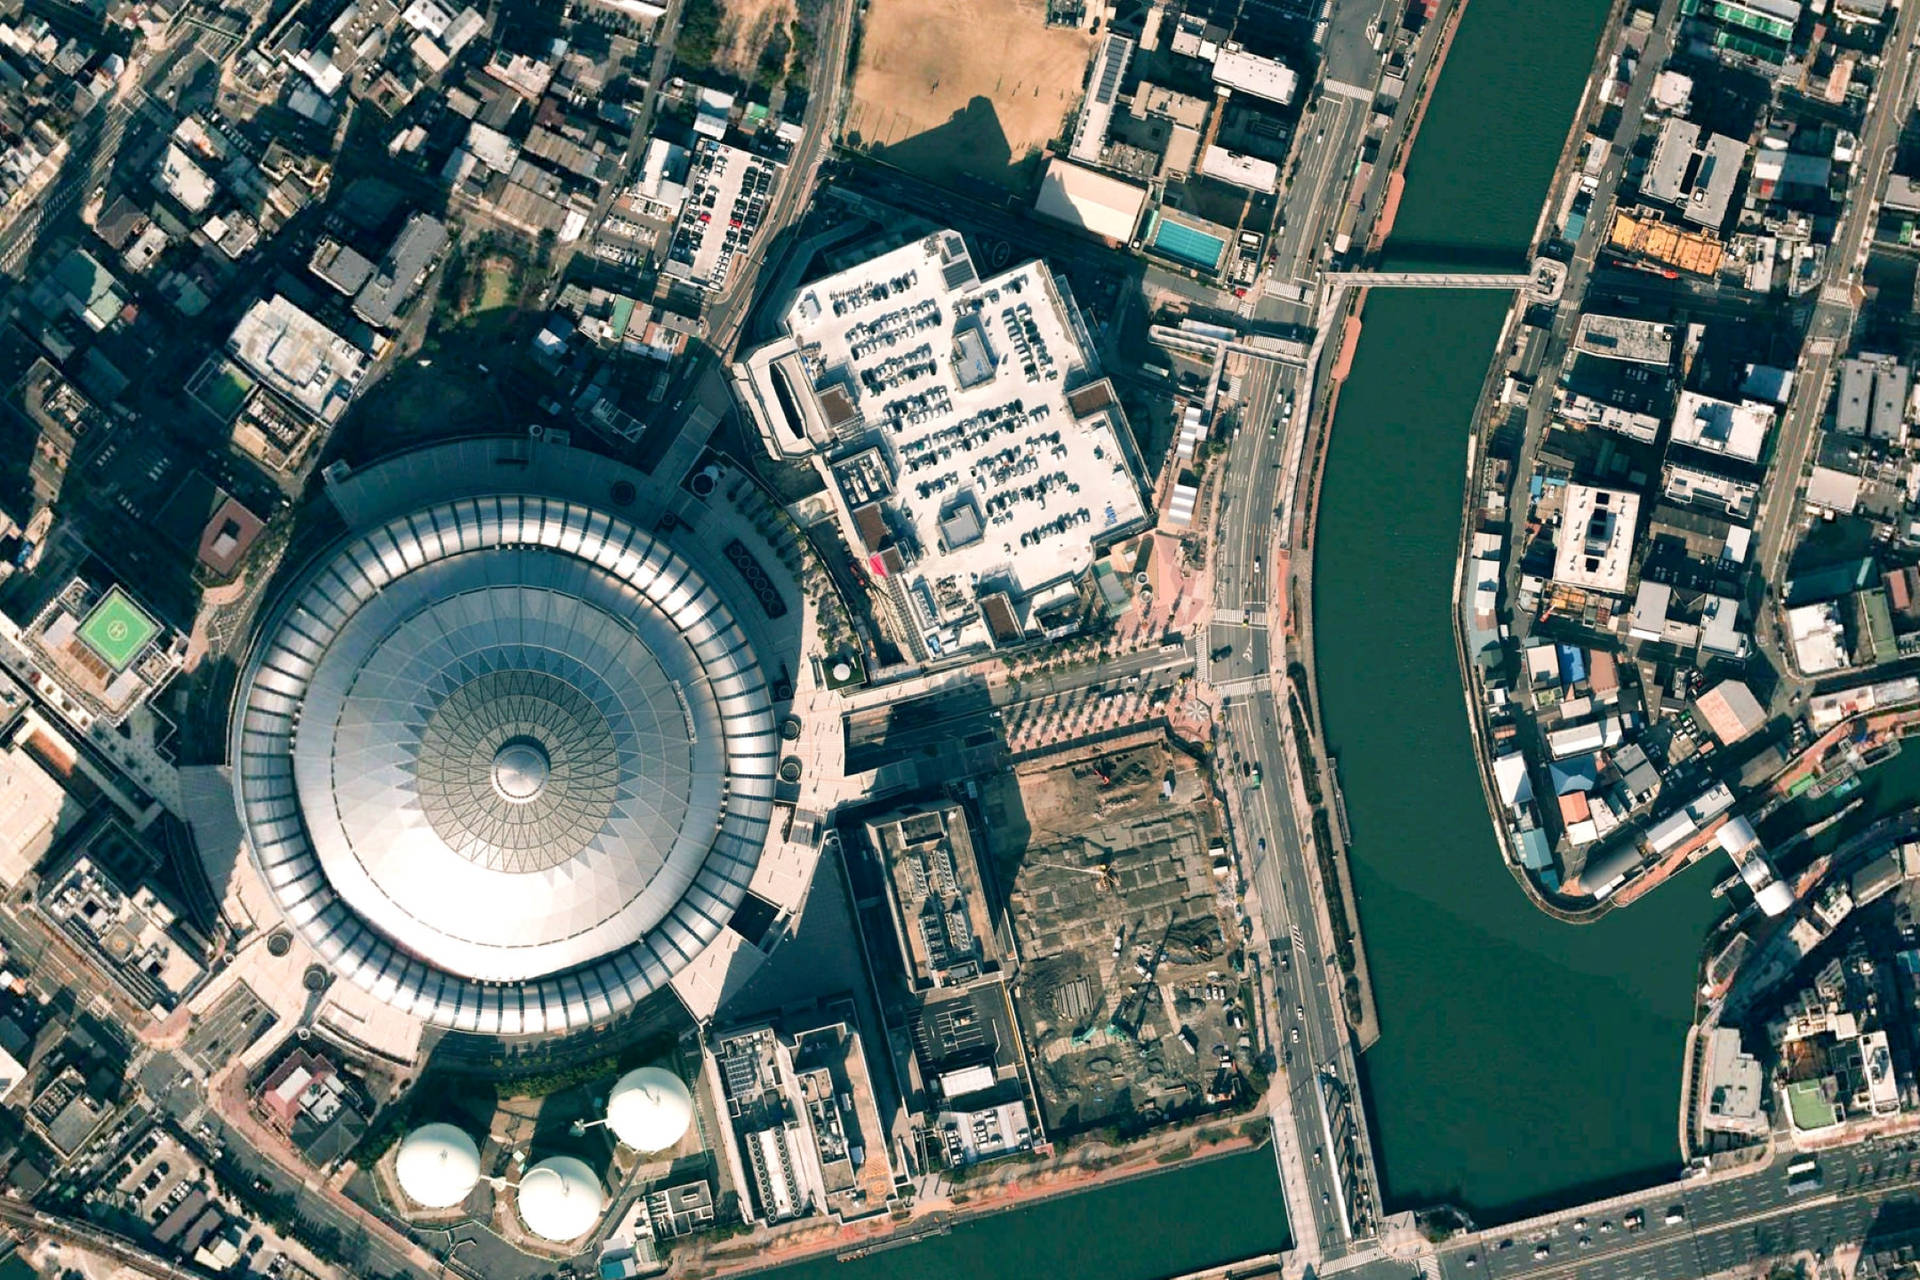 Google Earth Kyocera Dome Osaka (em Português: Google Earth Dome Kyocera De Osaka) É Uma Imagem De Papel De Parede Para Computador Ou Celular Que Representa O Famoso Estádio Kyocera Dome Em Osaka, Japão, Disponibilizado Pelo Google Earth. Papel de Parede